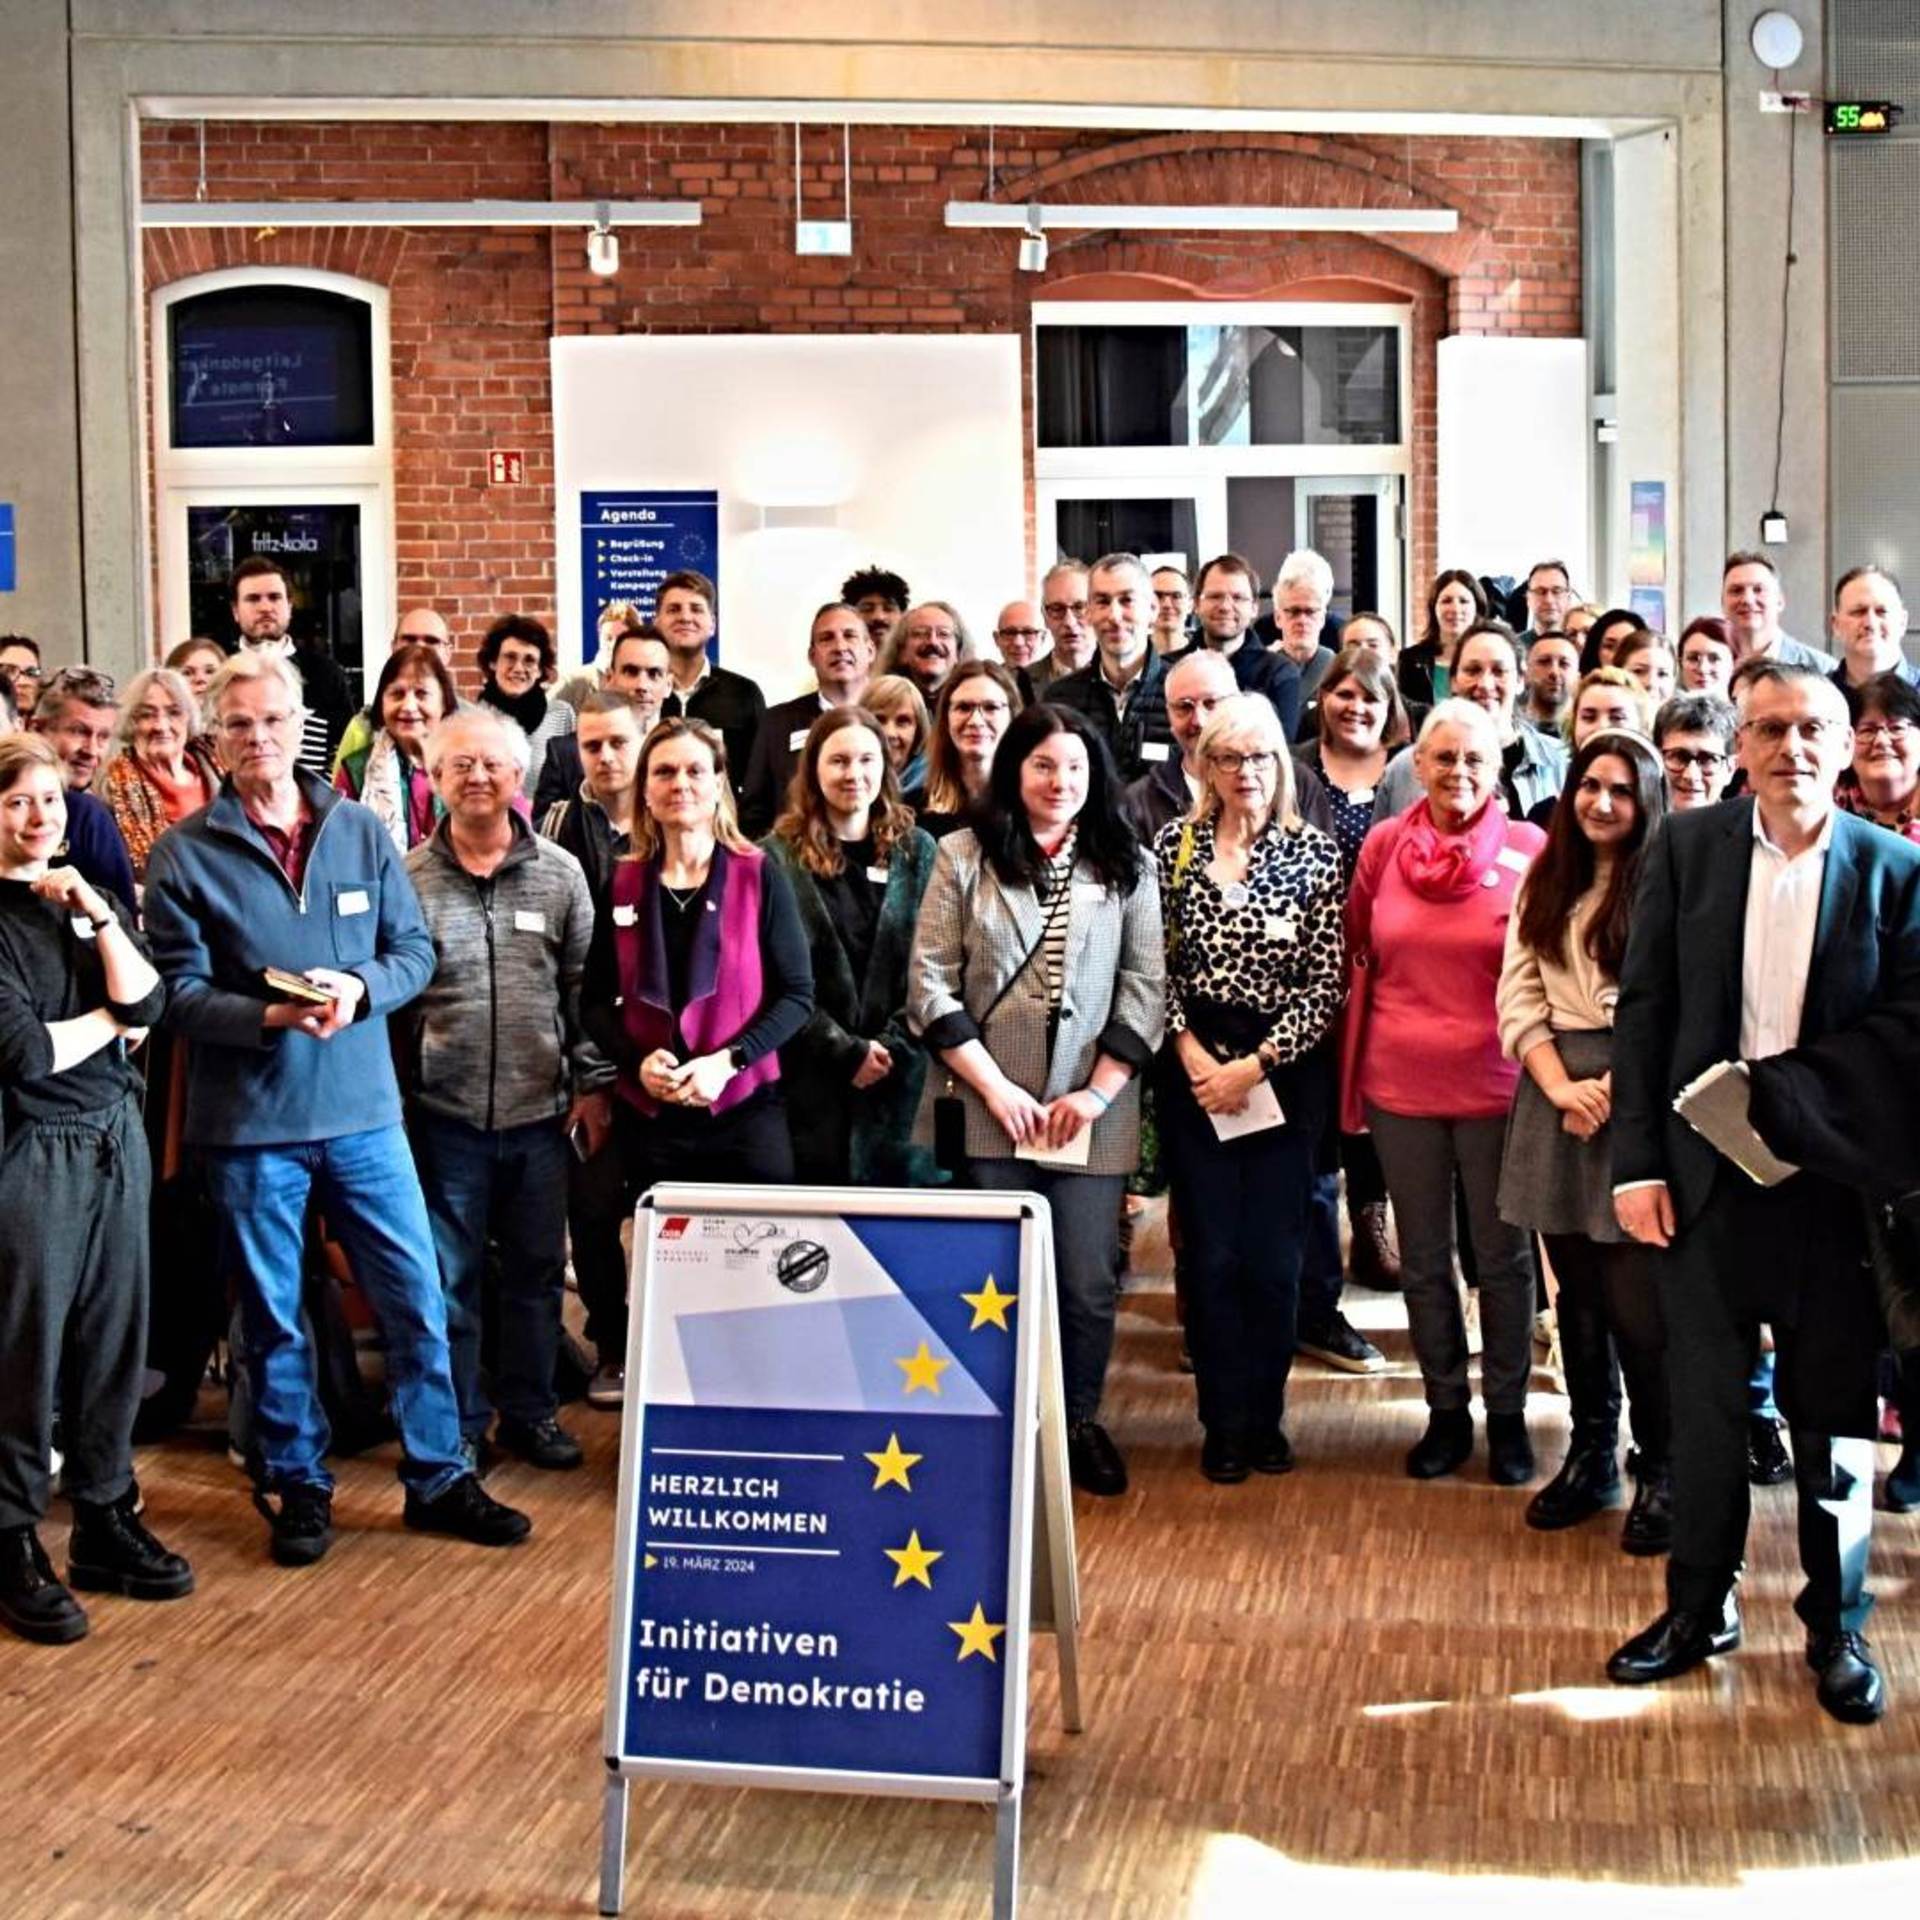 Gruppenfoto mit rund 50 Menschen von einem der ersten Treffen der neuen Demokratieinitiative.